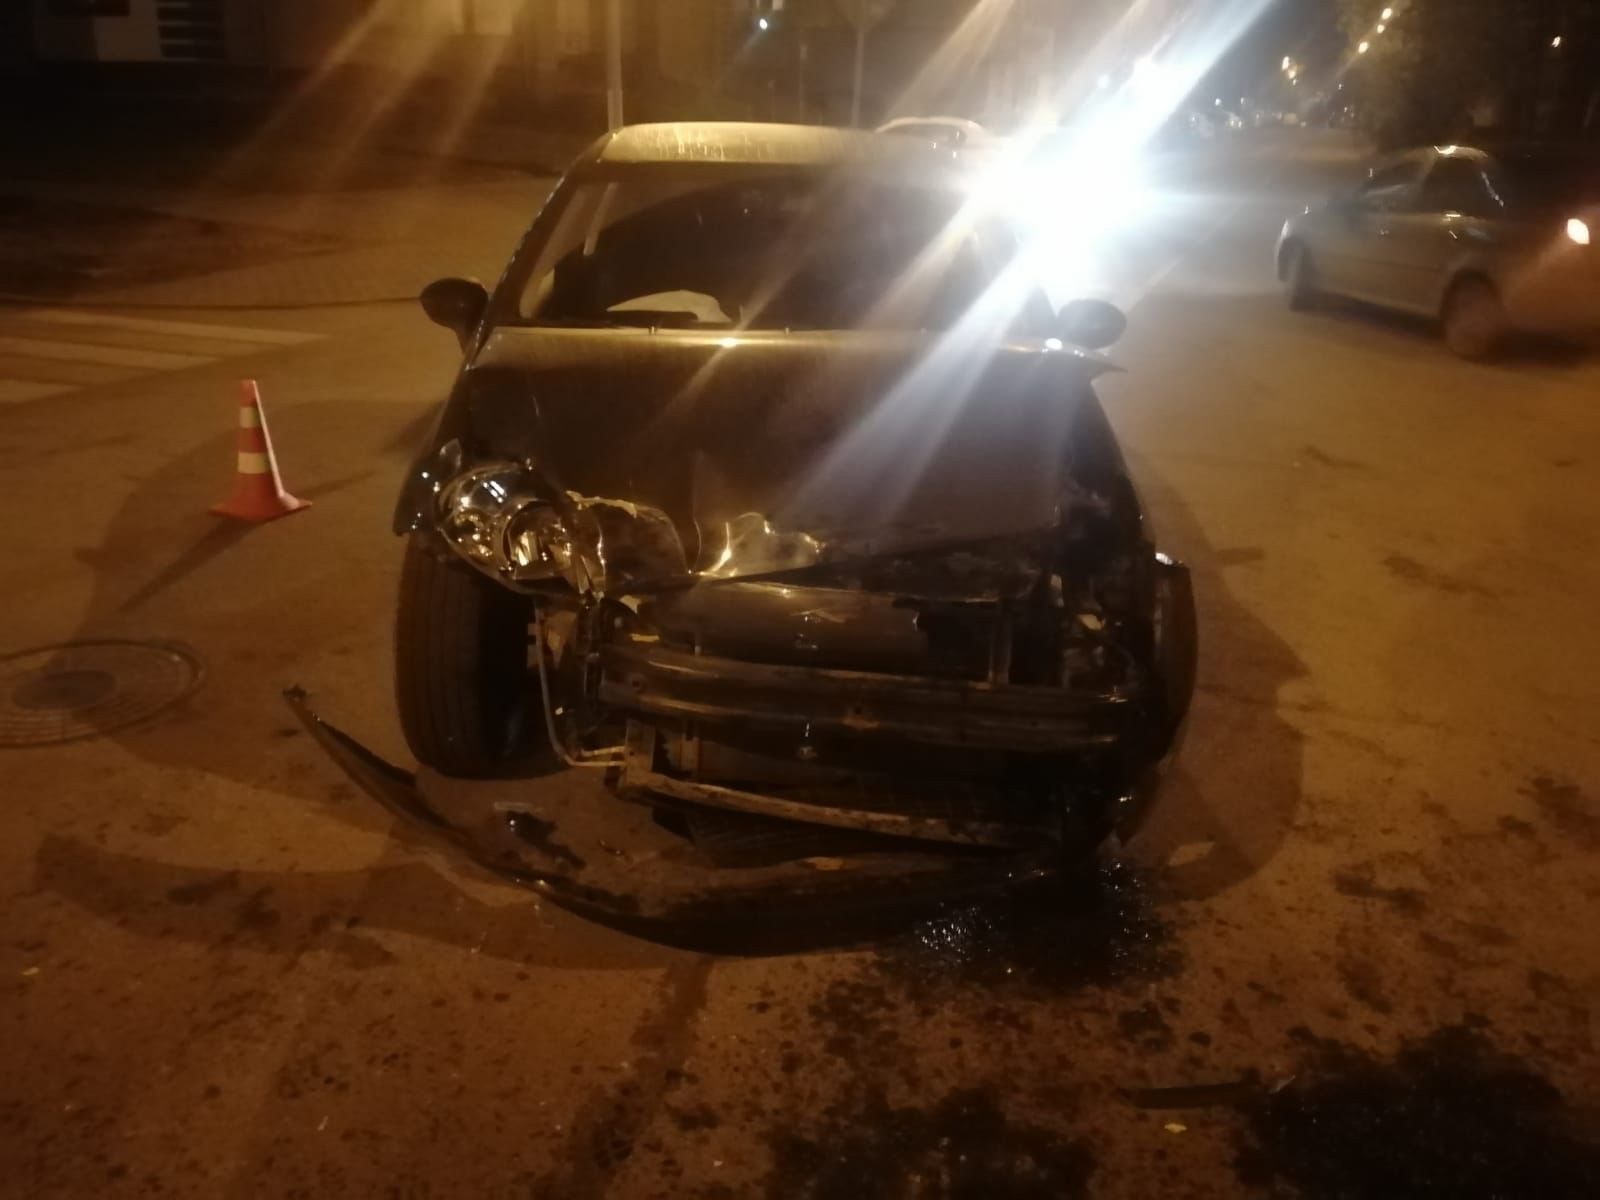 На пересечении улиц в Твери столкнулись два автомобиля